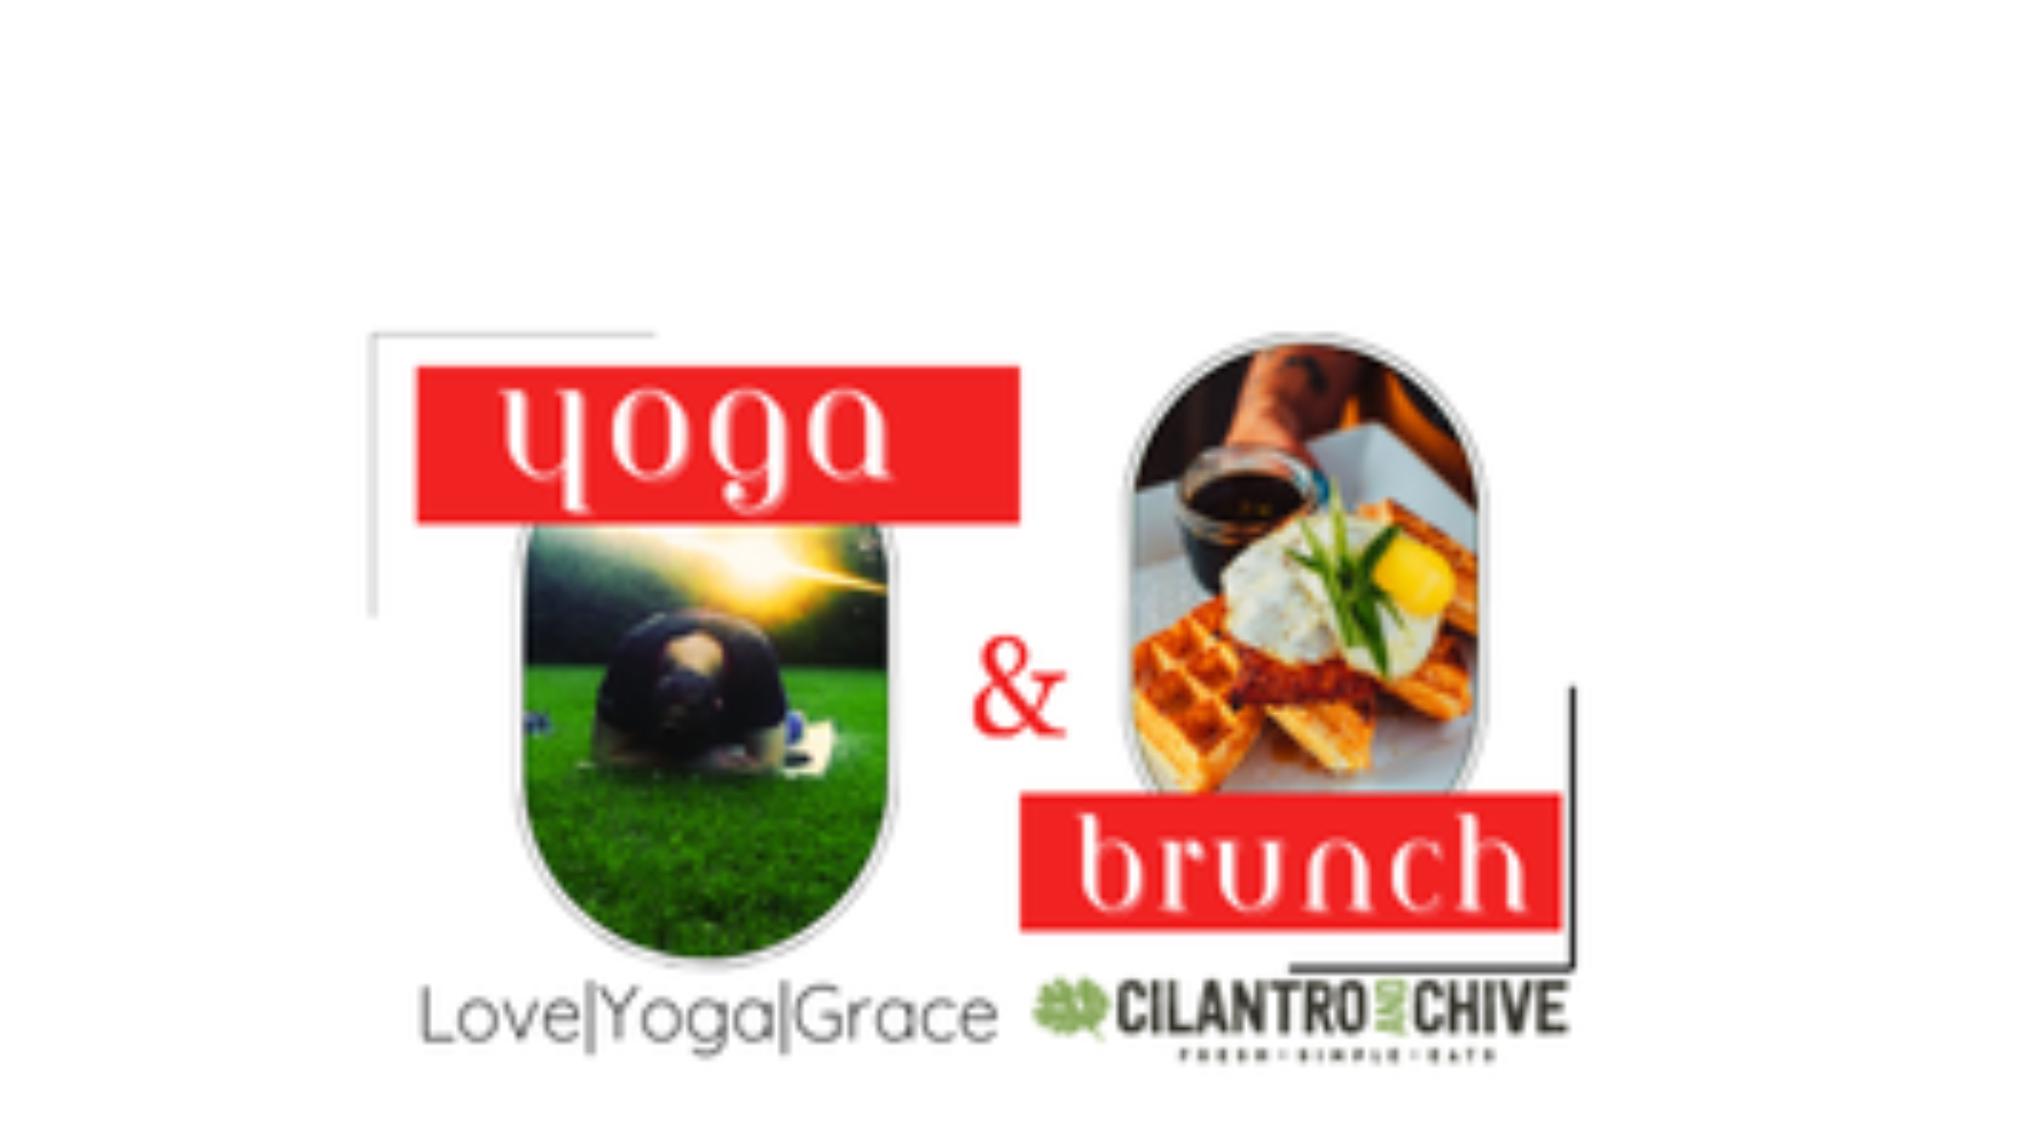 Yoga & Brunch @ Cilantro & Chive